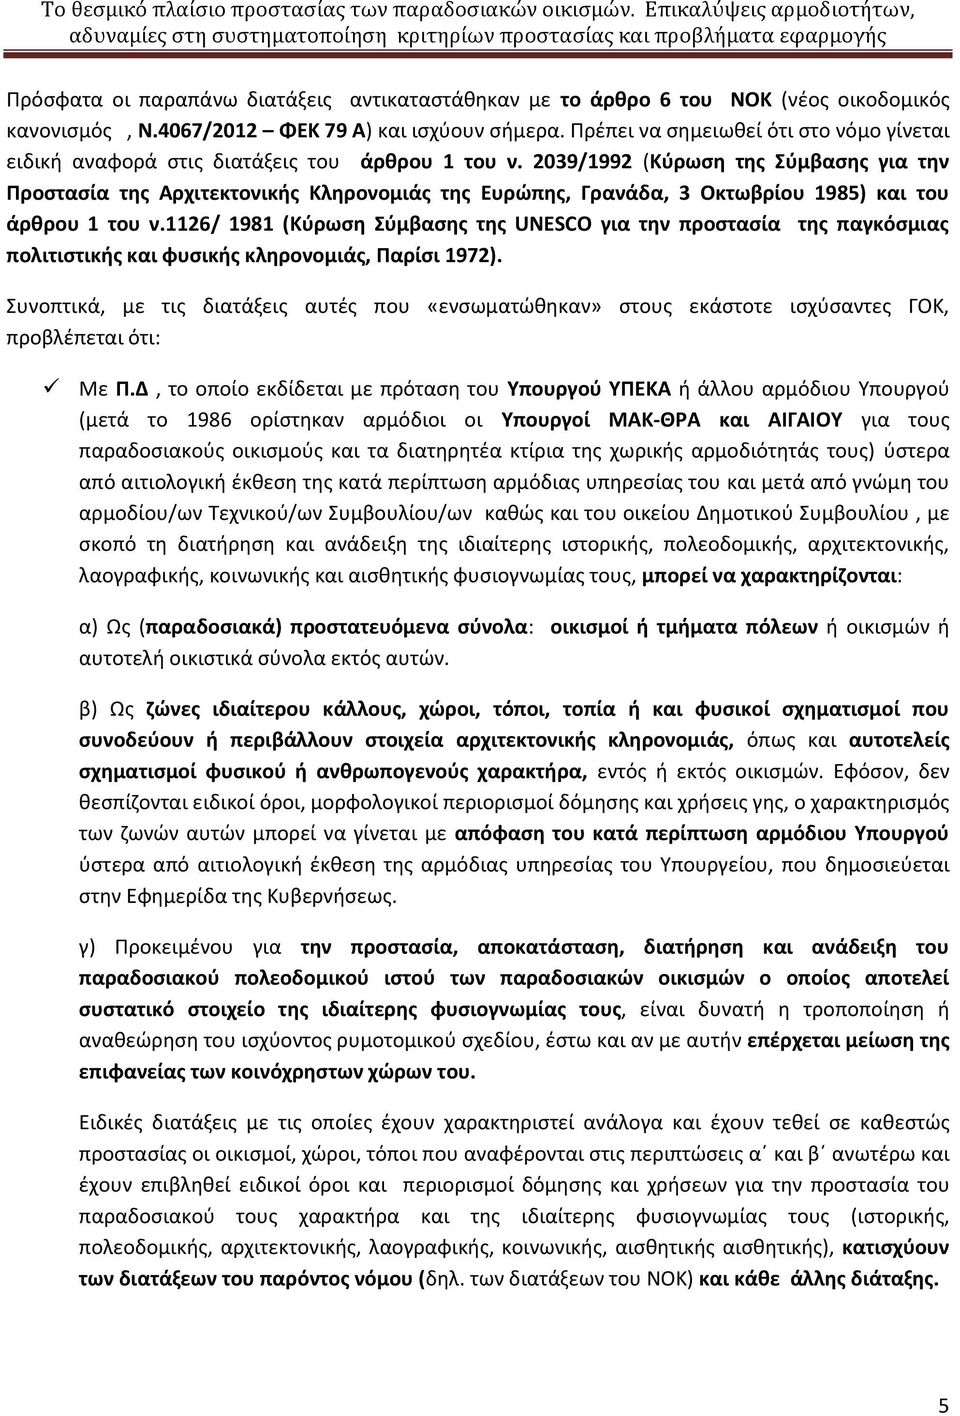 2039/1992 (Κύρωση της Σύμβασης για την Προστασία της Αρχιτεκτονικής Κληρονομιάς της Ευρώπης, Γρανάδα, 3 Οκτωβρίου 1985) και του άρθρου 1 του ν.